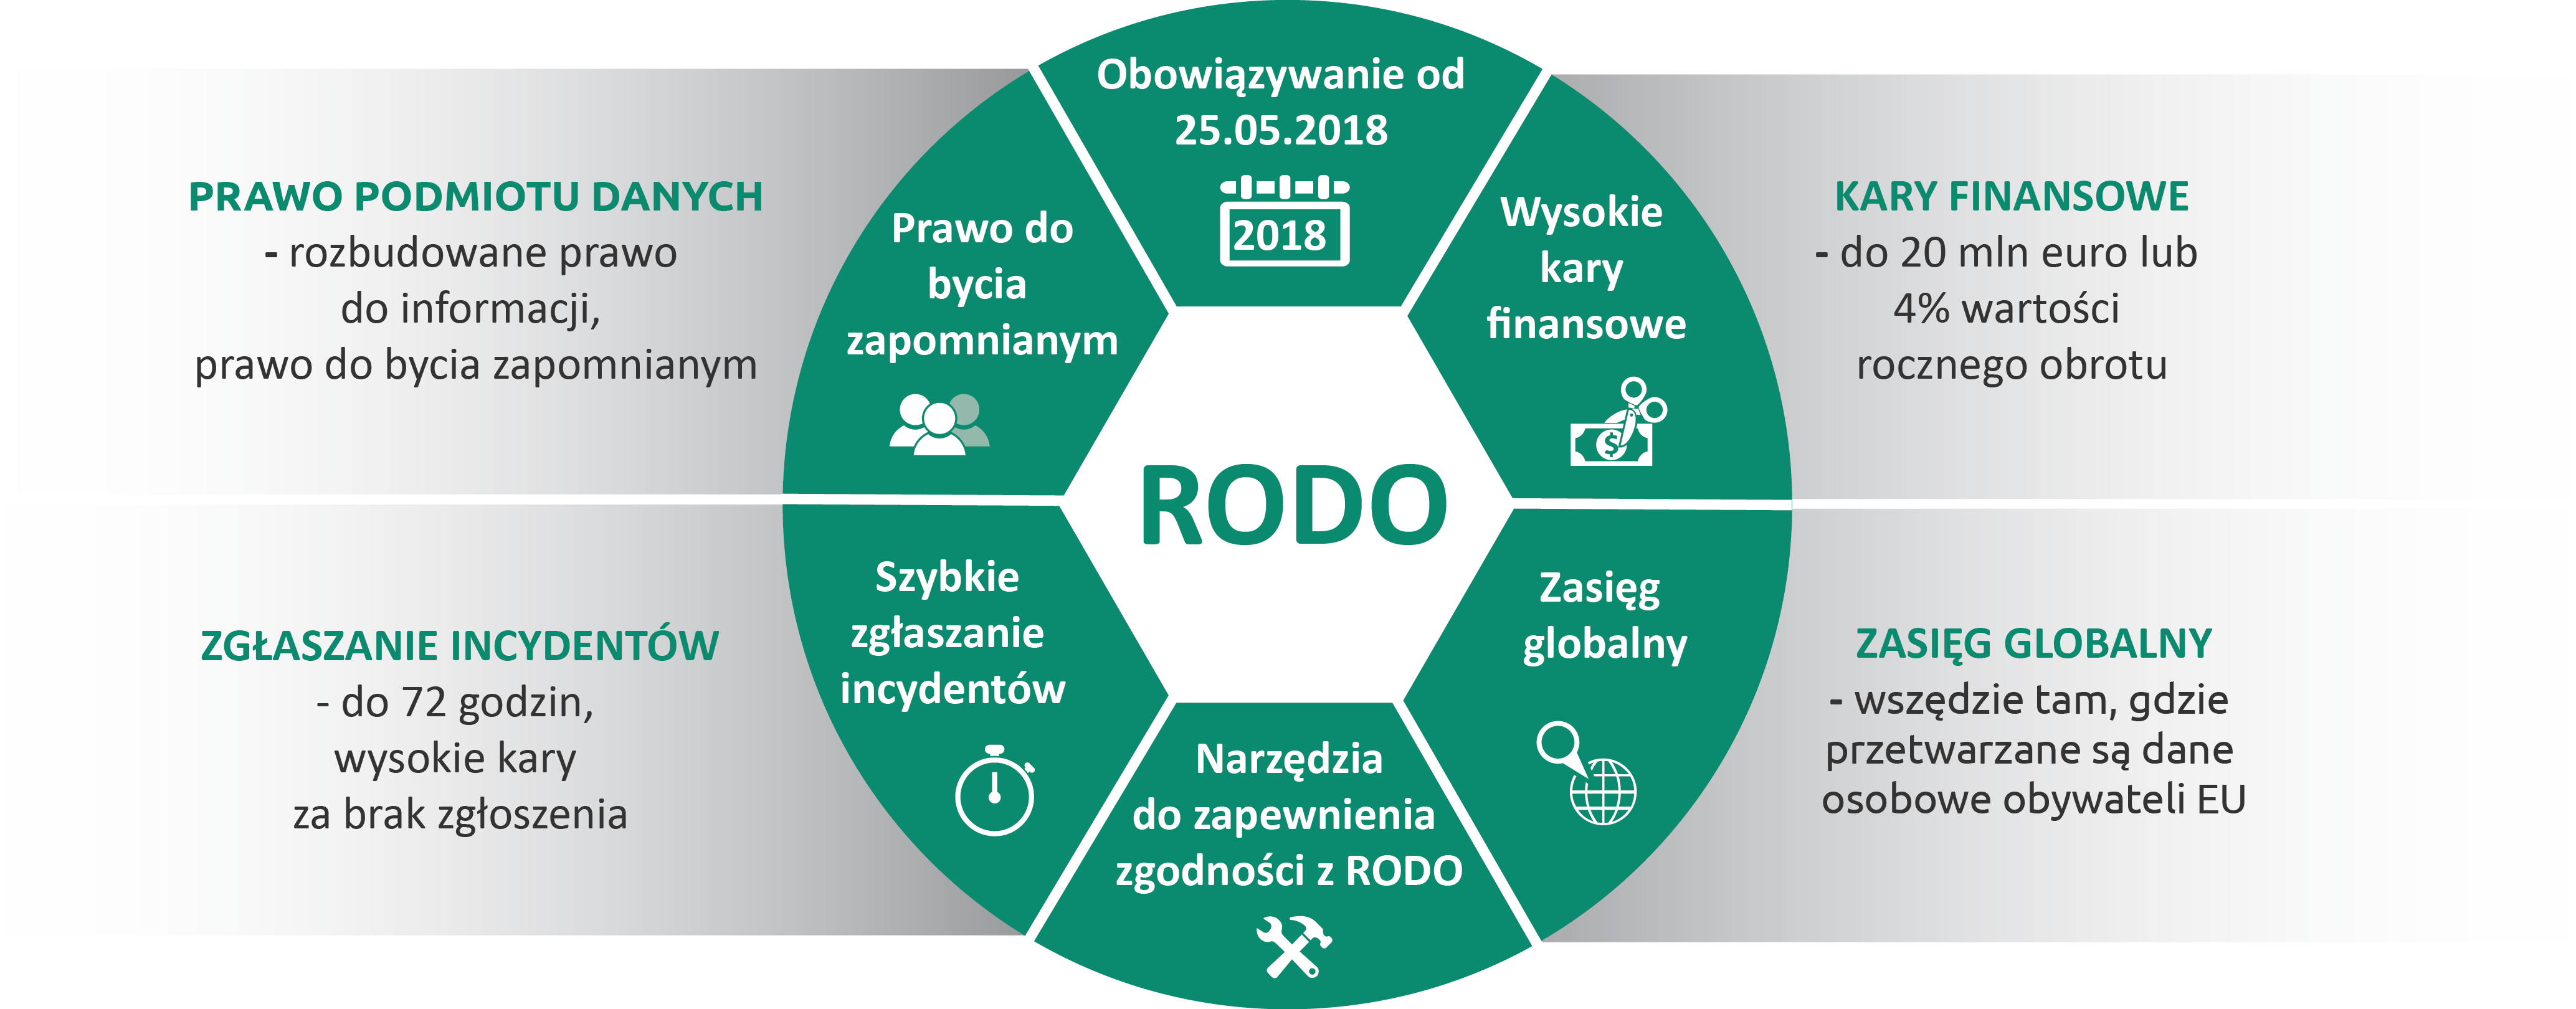 RODO zadbajobezpieczenstwo.pl